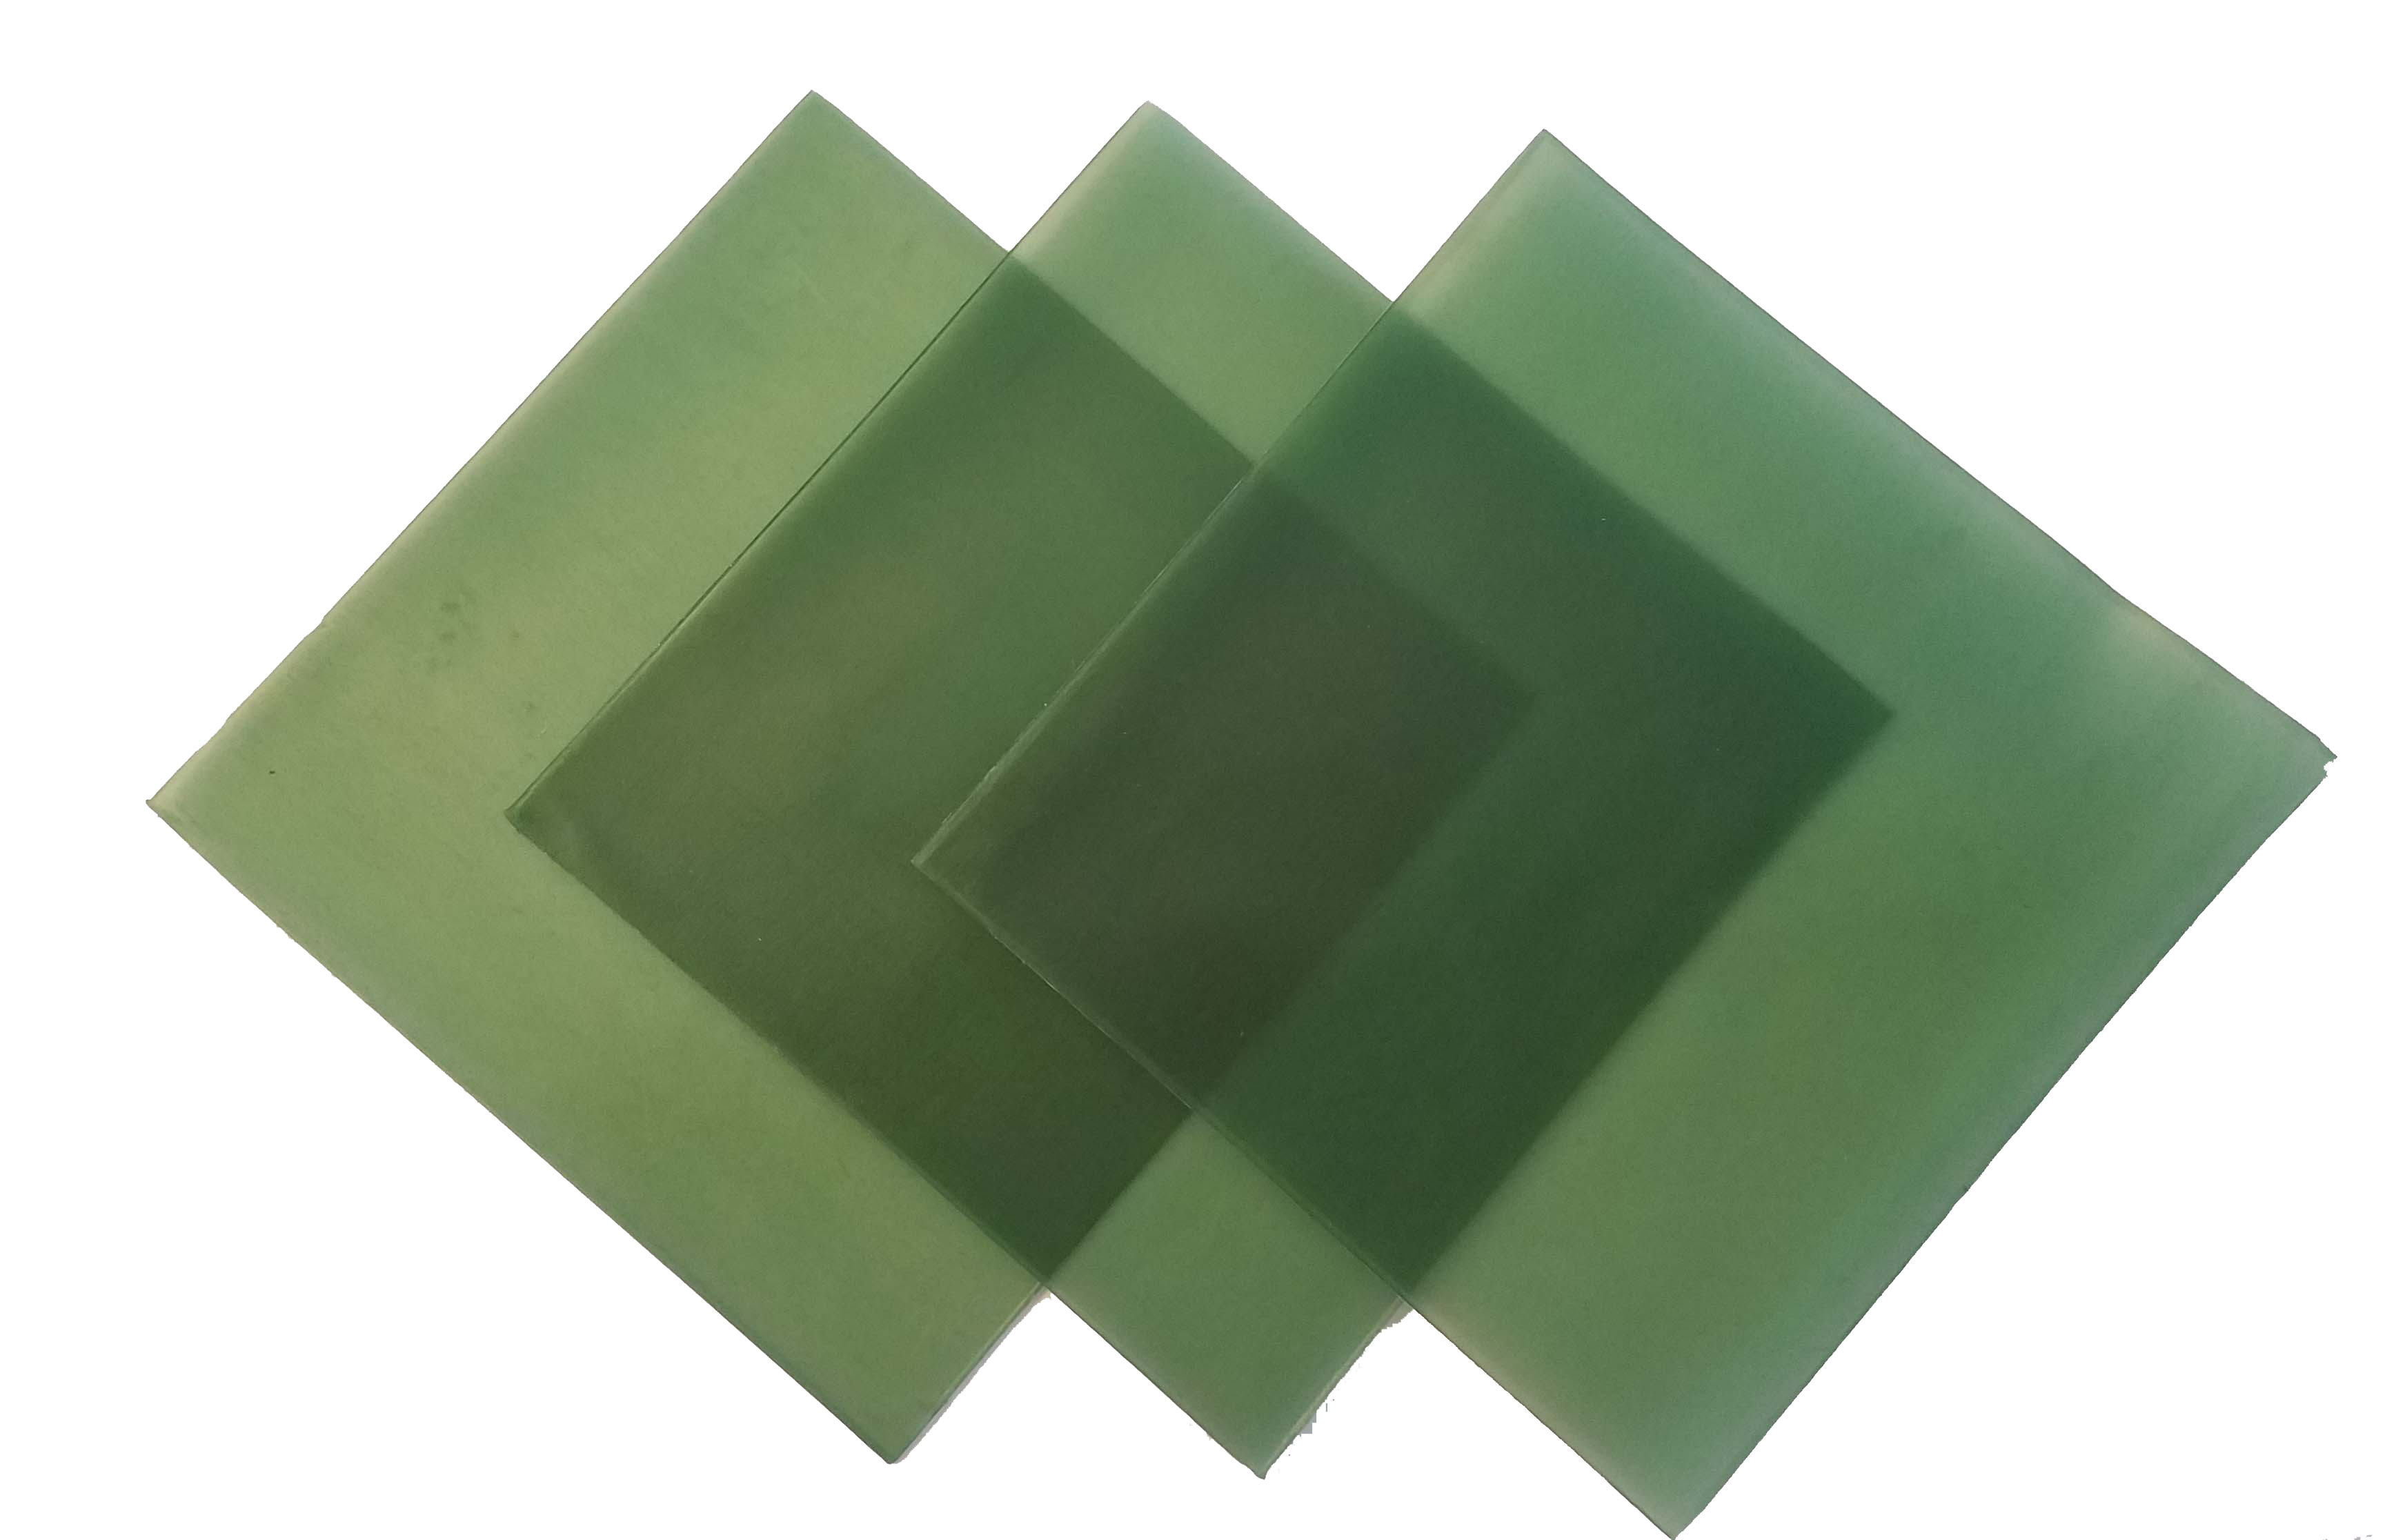 4"x4" sheet wax 23 gauge green